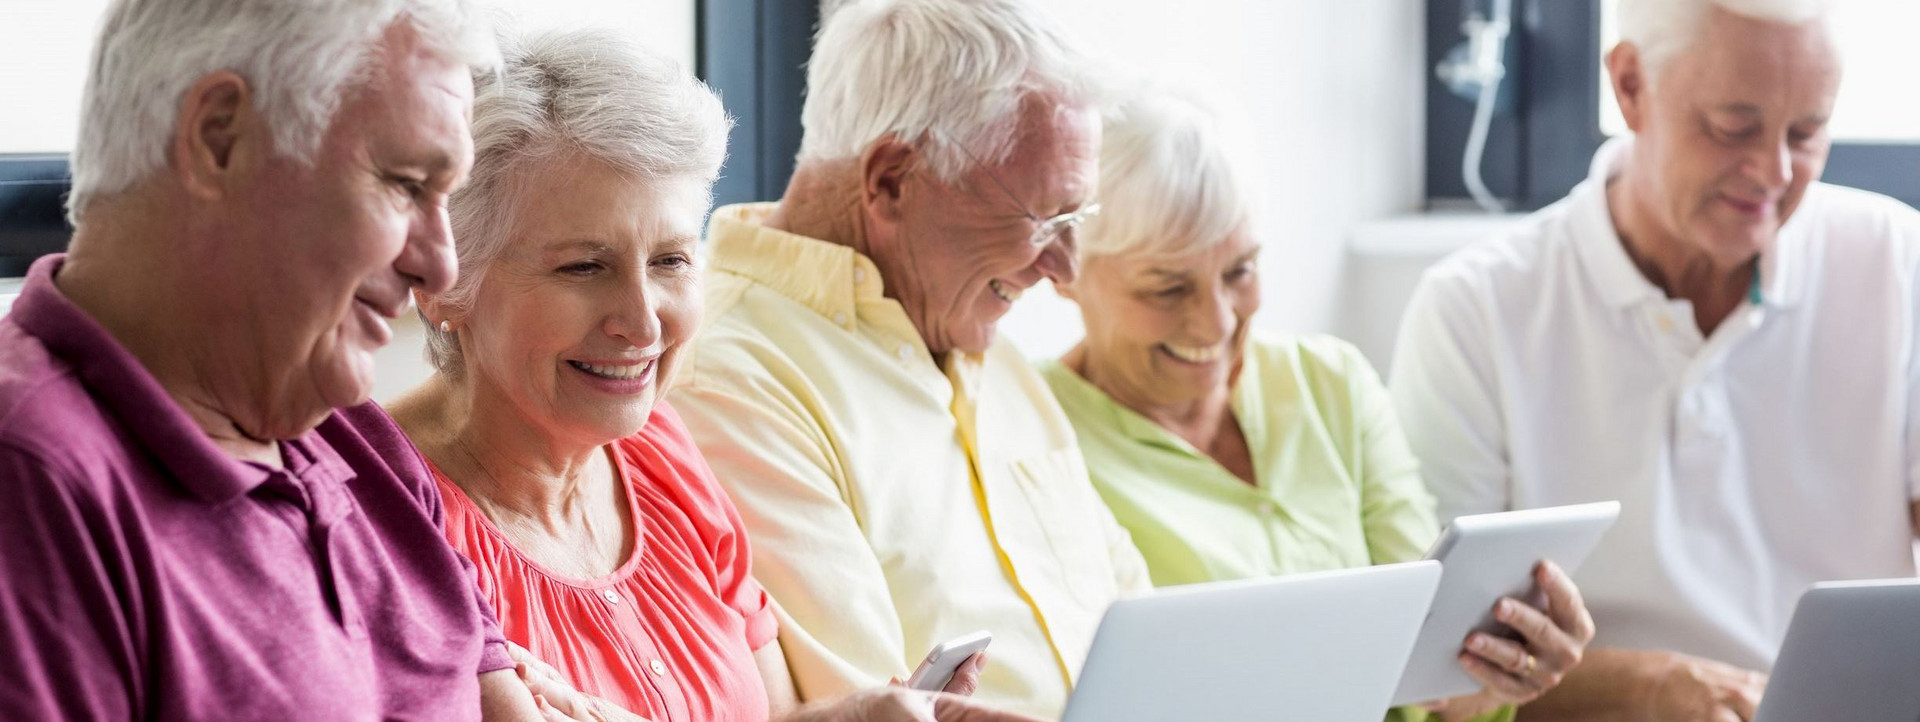 Symbolbild: Senioren arbeiten gemeinsam am Computer